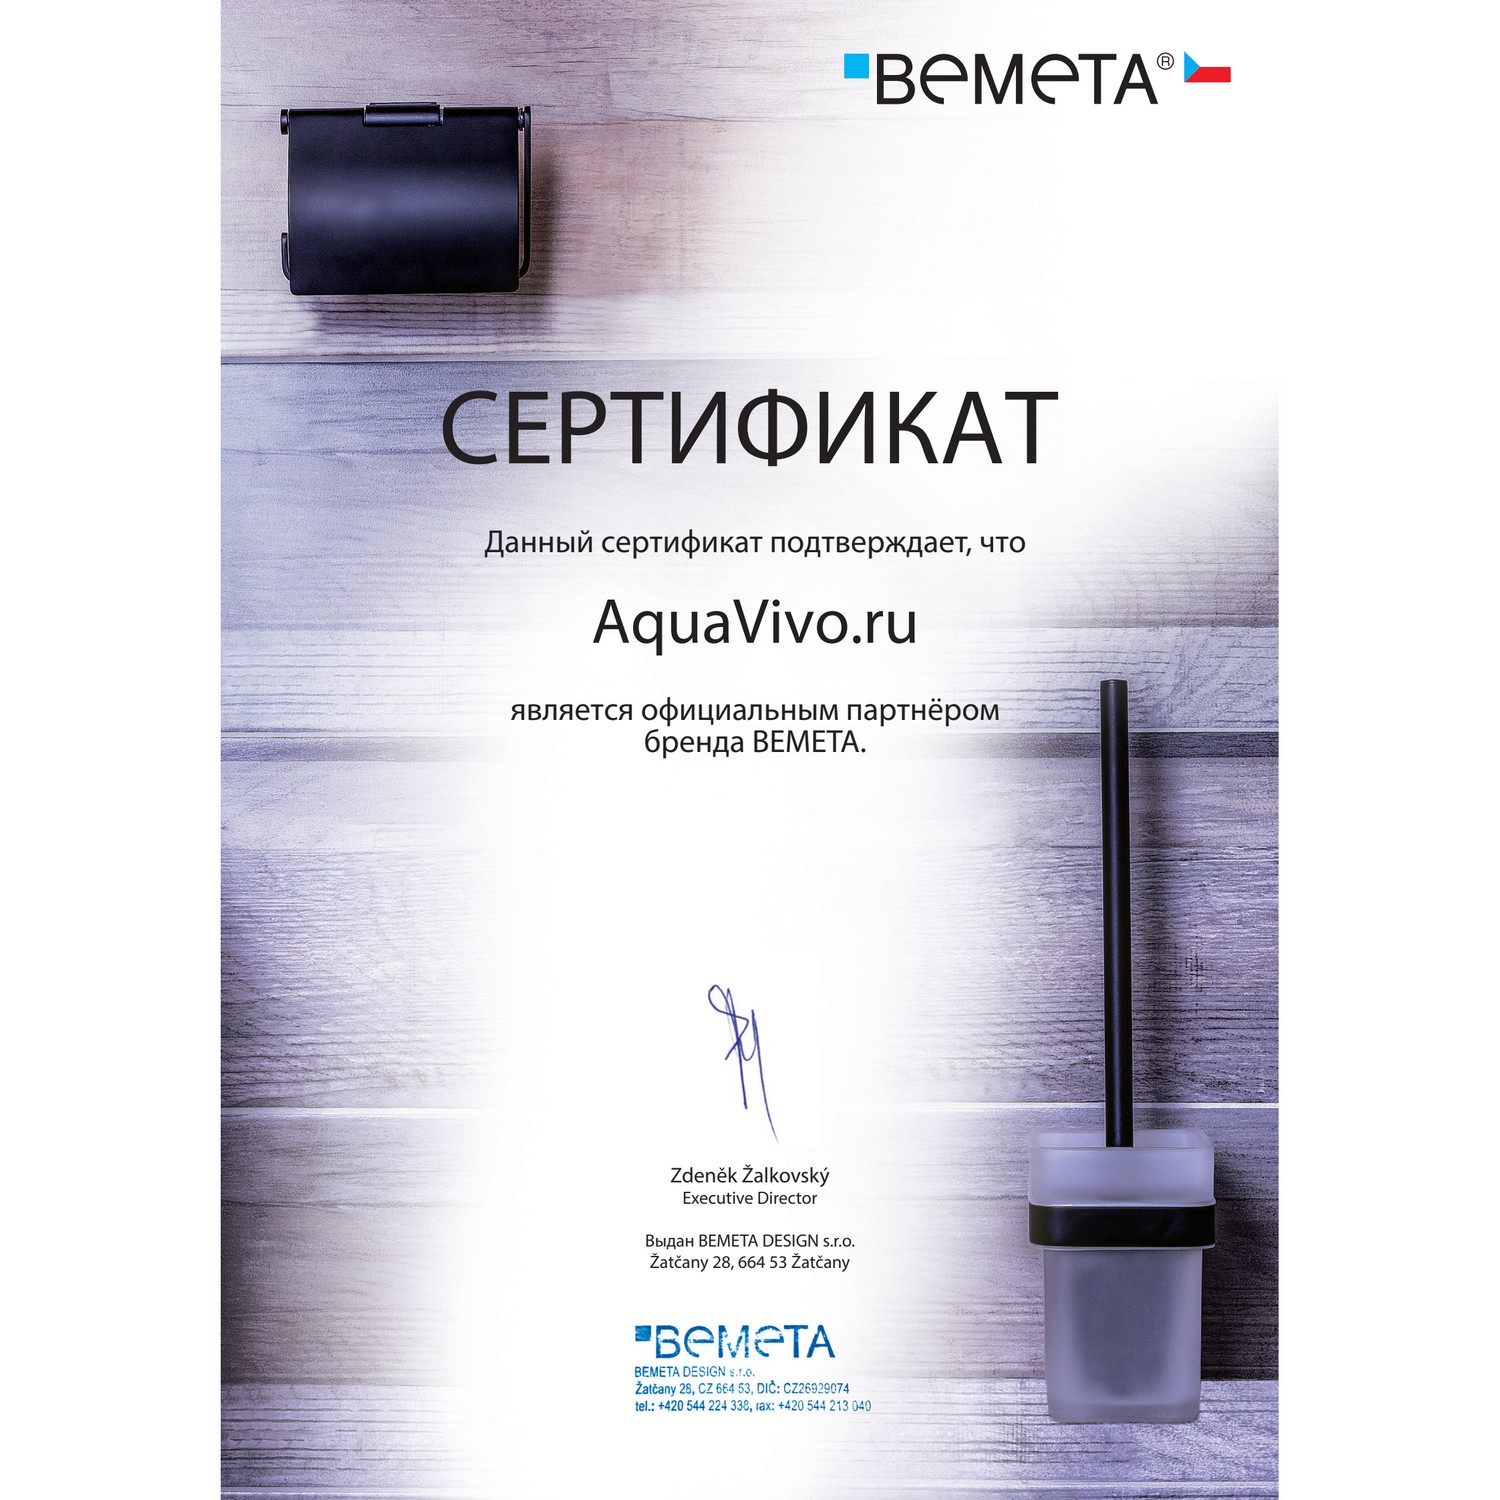 Стакан Bemeta Beta 132110042 двойной, с держателем зубной щетки, настенный - фото 1